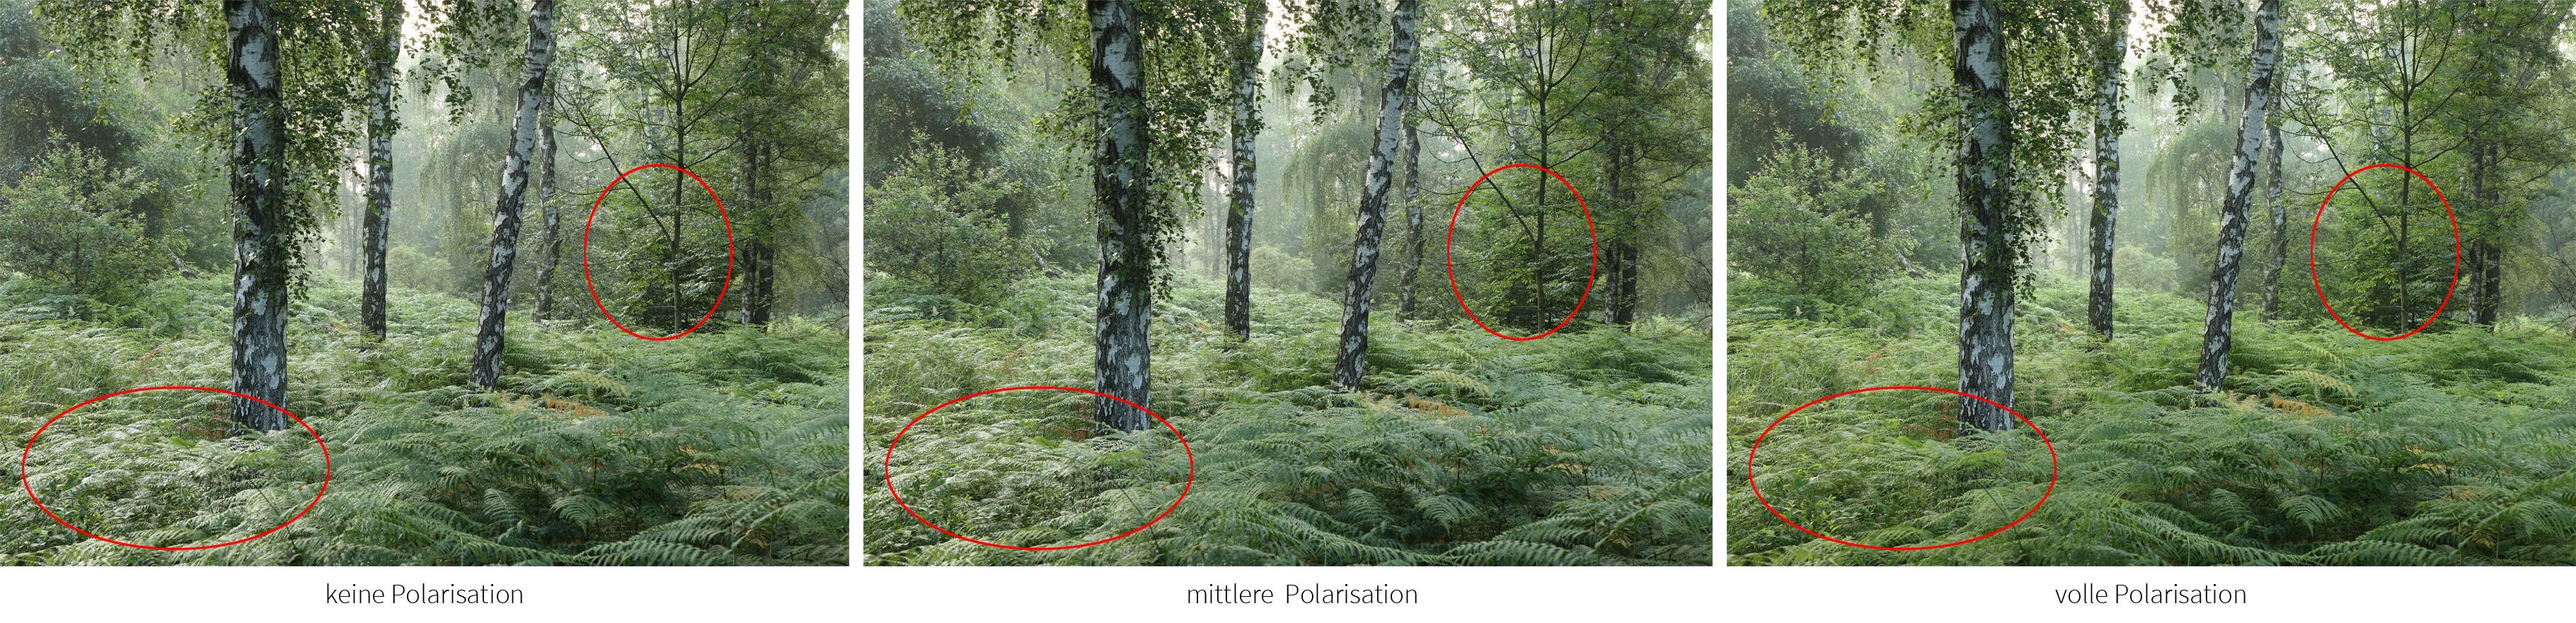 Vergleich Polarisationsfilter im Wald